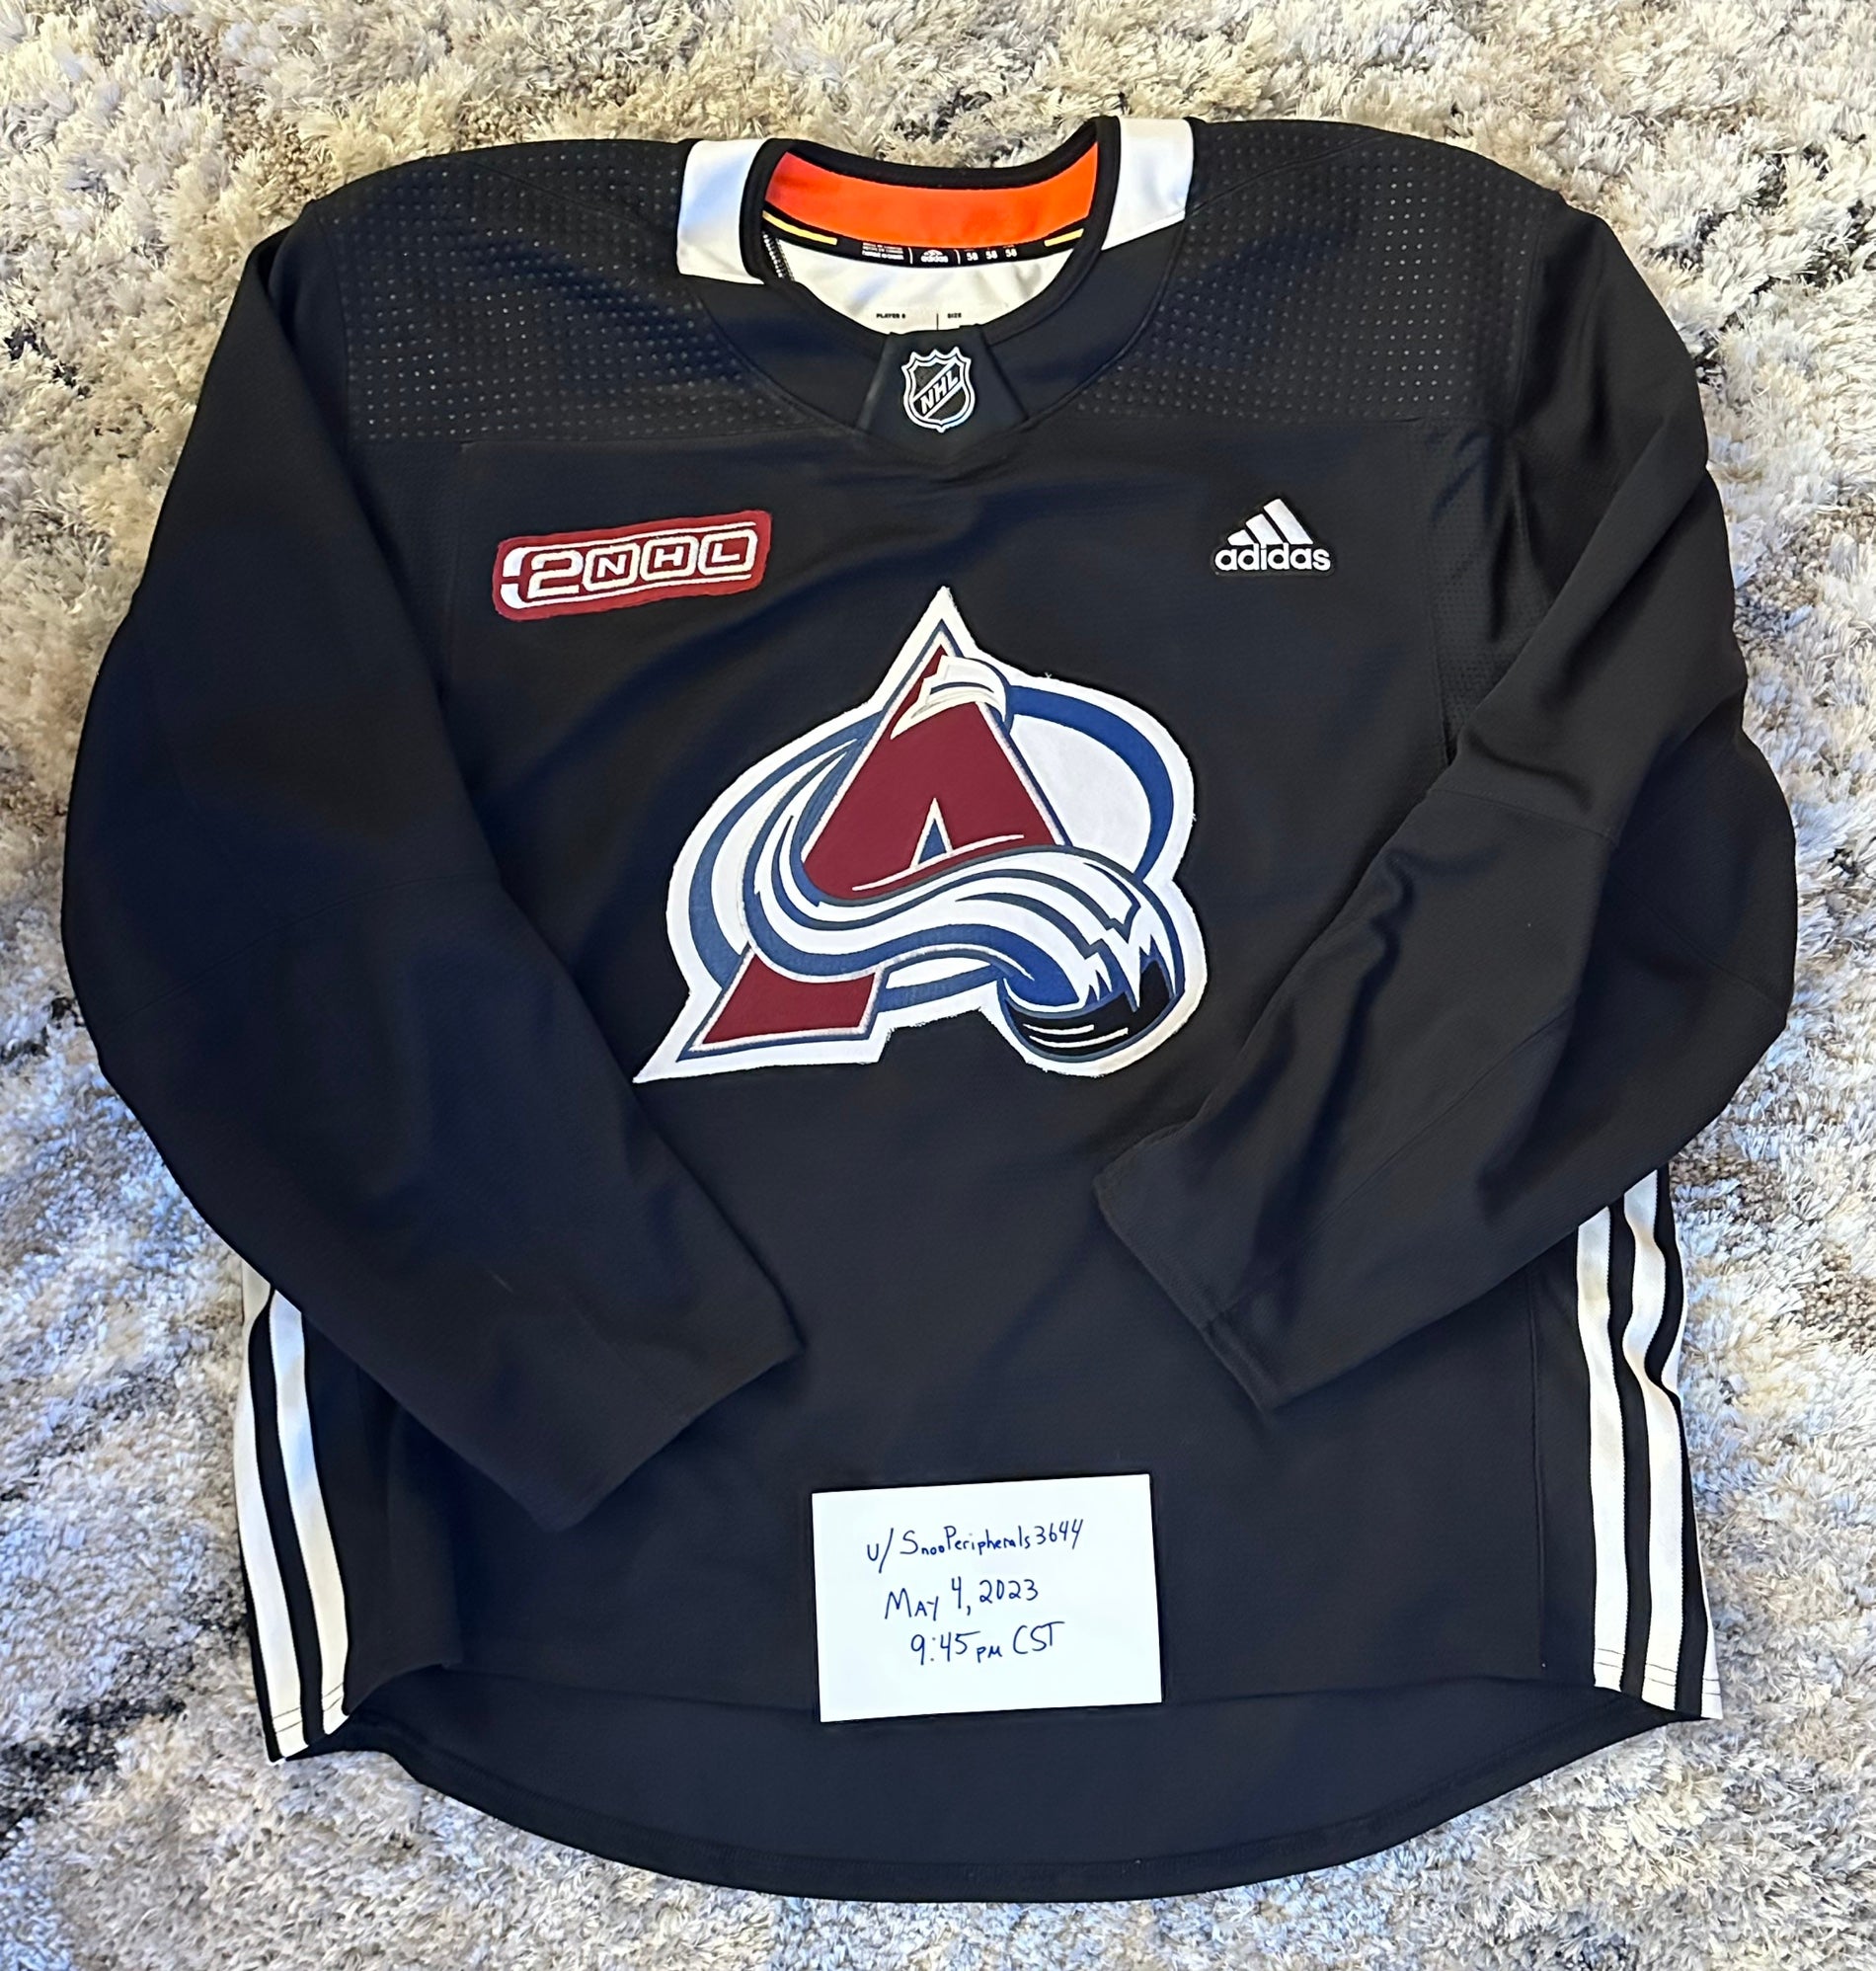 2001 Colorado Avalanche Custom Blank Hockey Jerseys